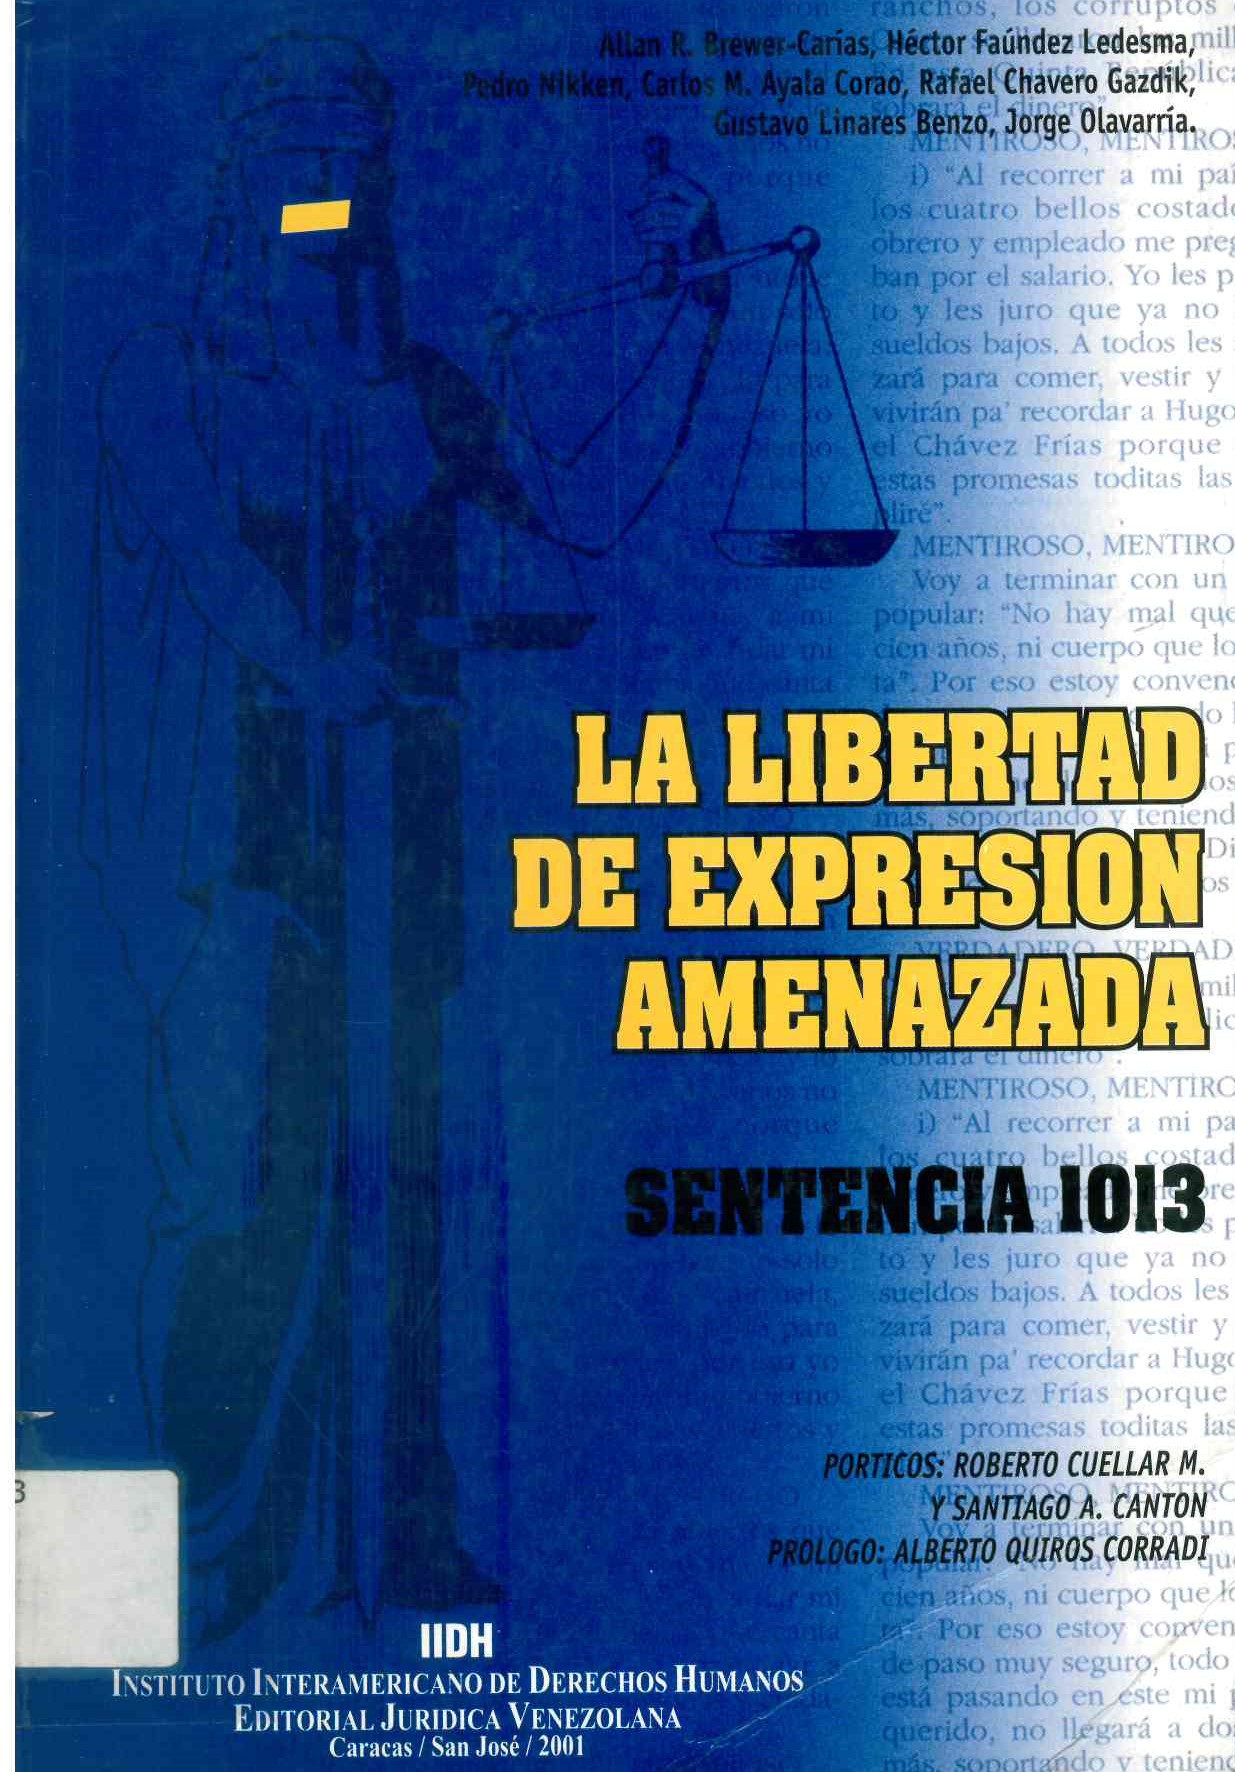 Libertad de expresión amenazada (sentencia 1.013)